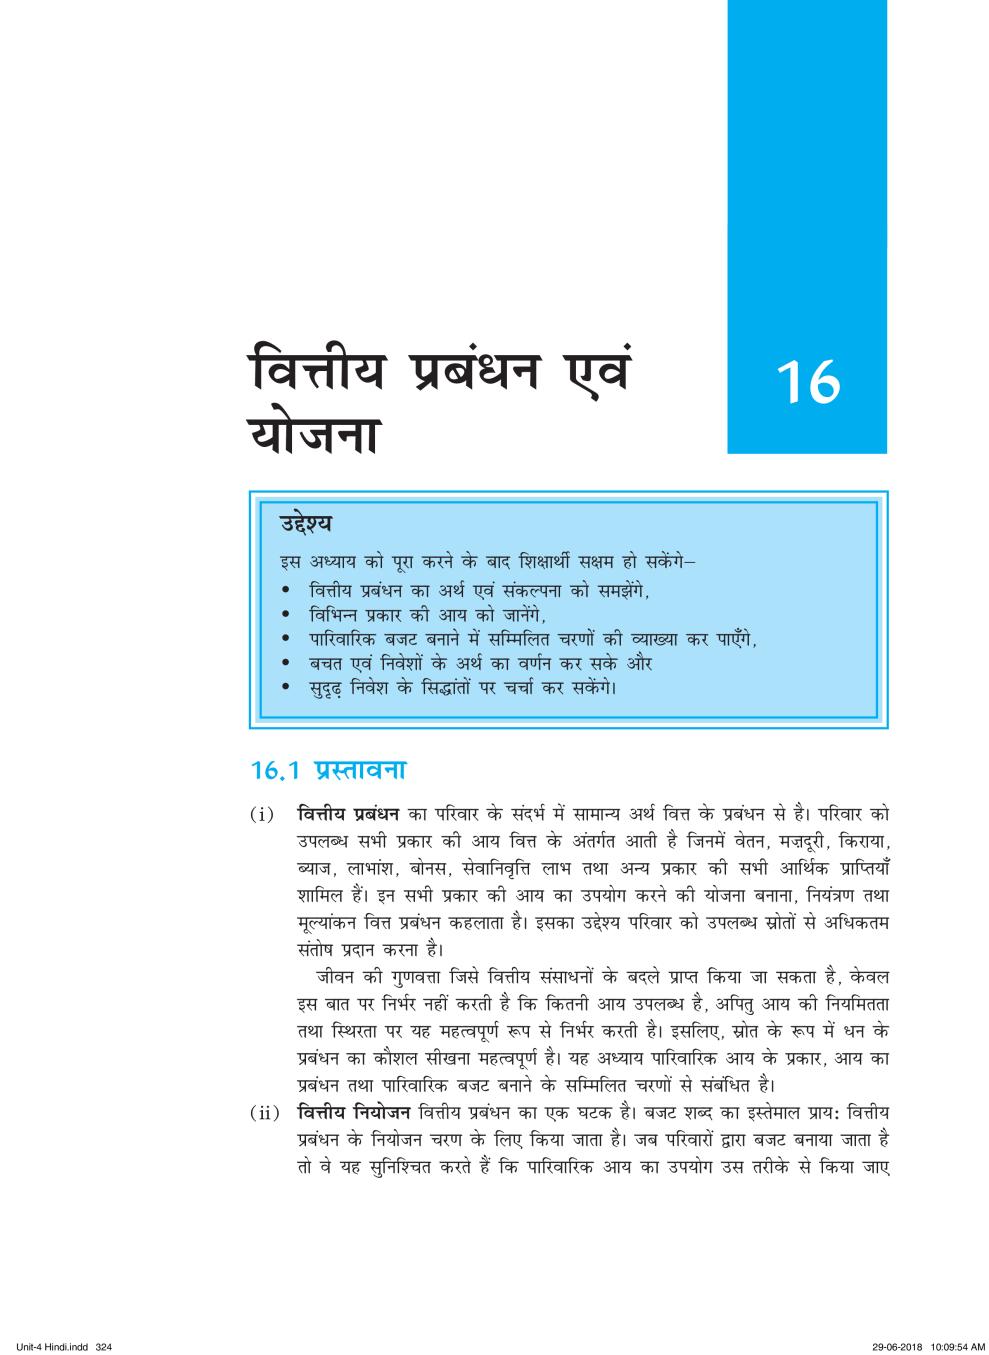 NCERT Book Class 11 Home Science (मानव पारिस्थितिकी और परिवार विज्ञान) Chapter 16 वित्तीय प्रबंधन एवं योजना - Page 1